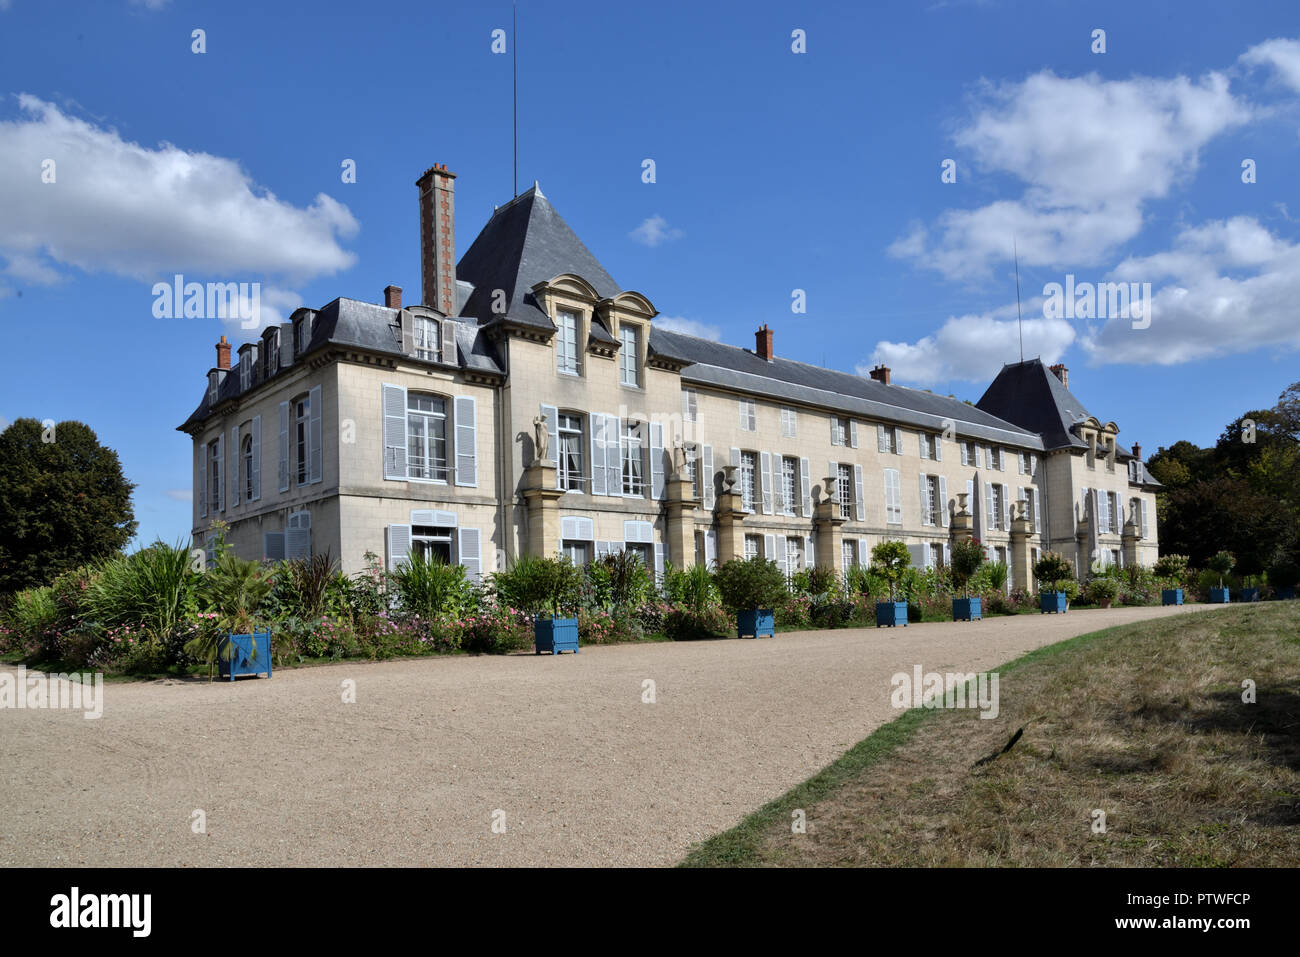 Château de la Malmaison Stock Photo